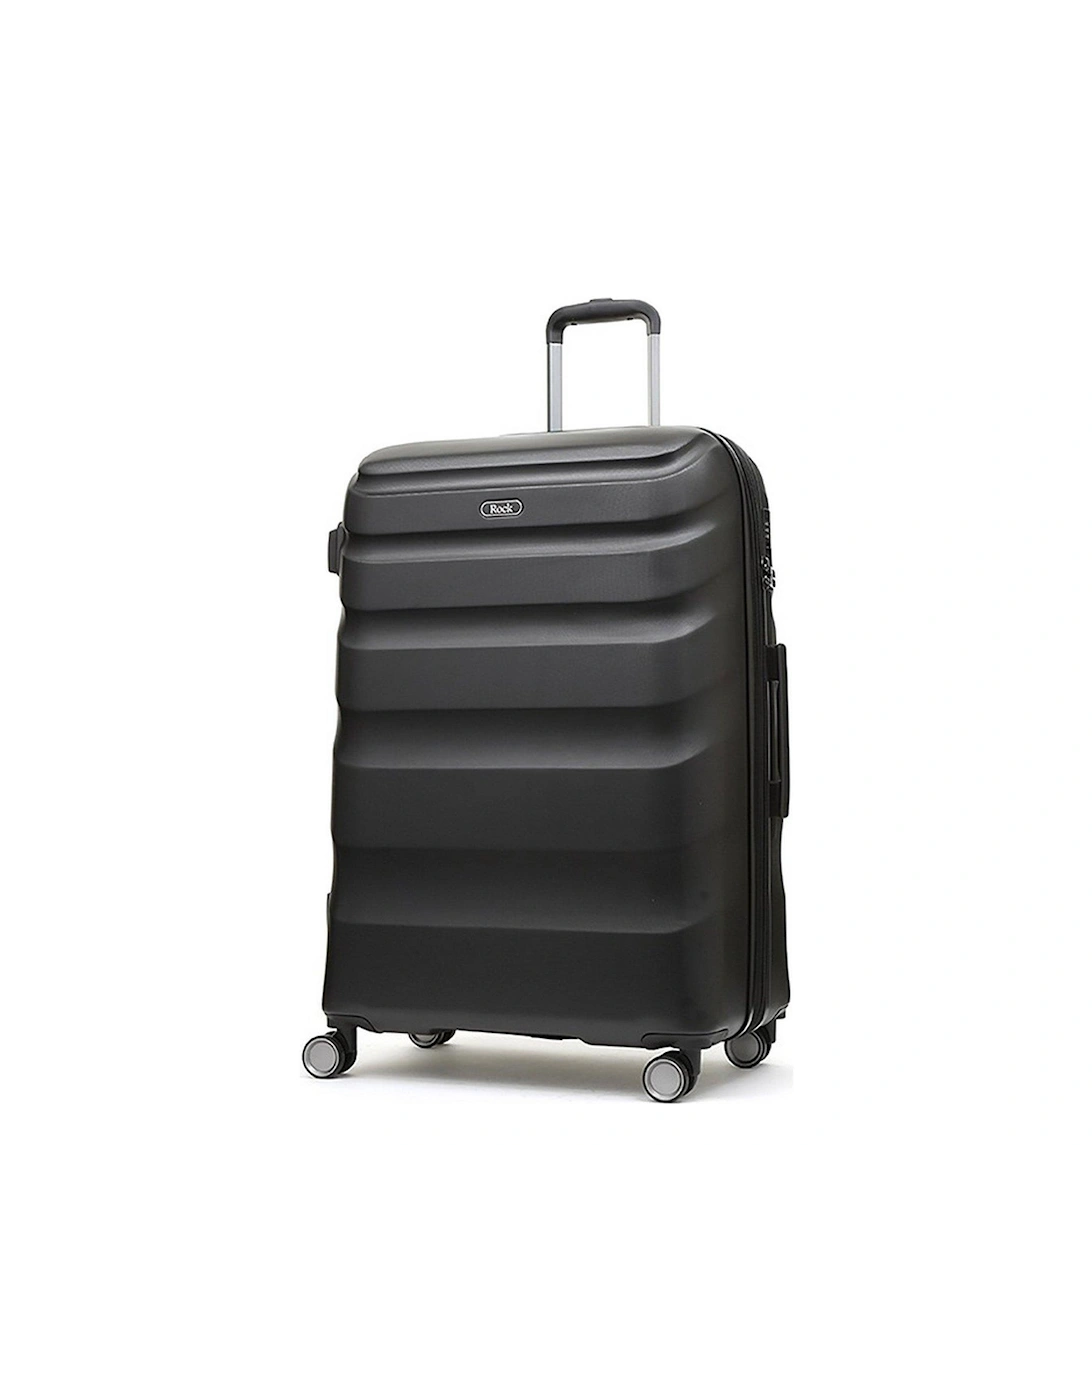 Bali 8 Wheel Hardshell Large Suitcase - Black, 3 of 2